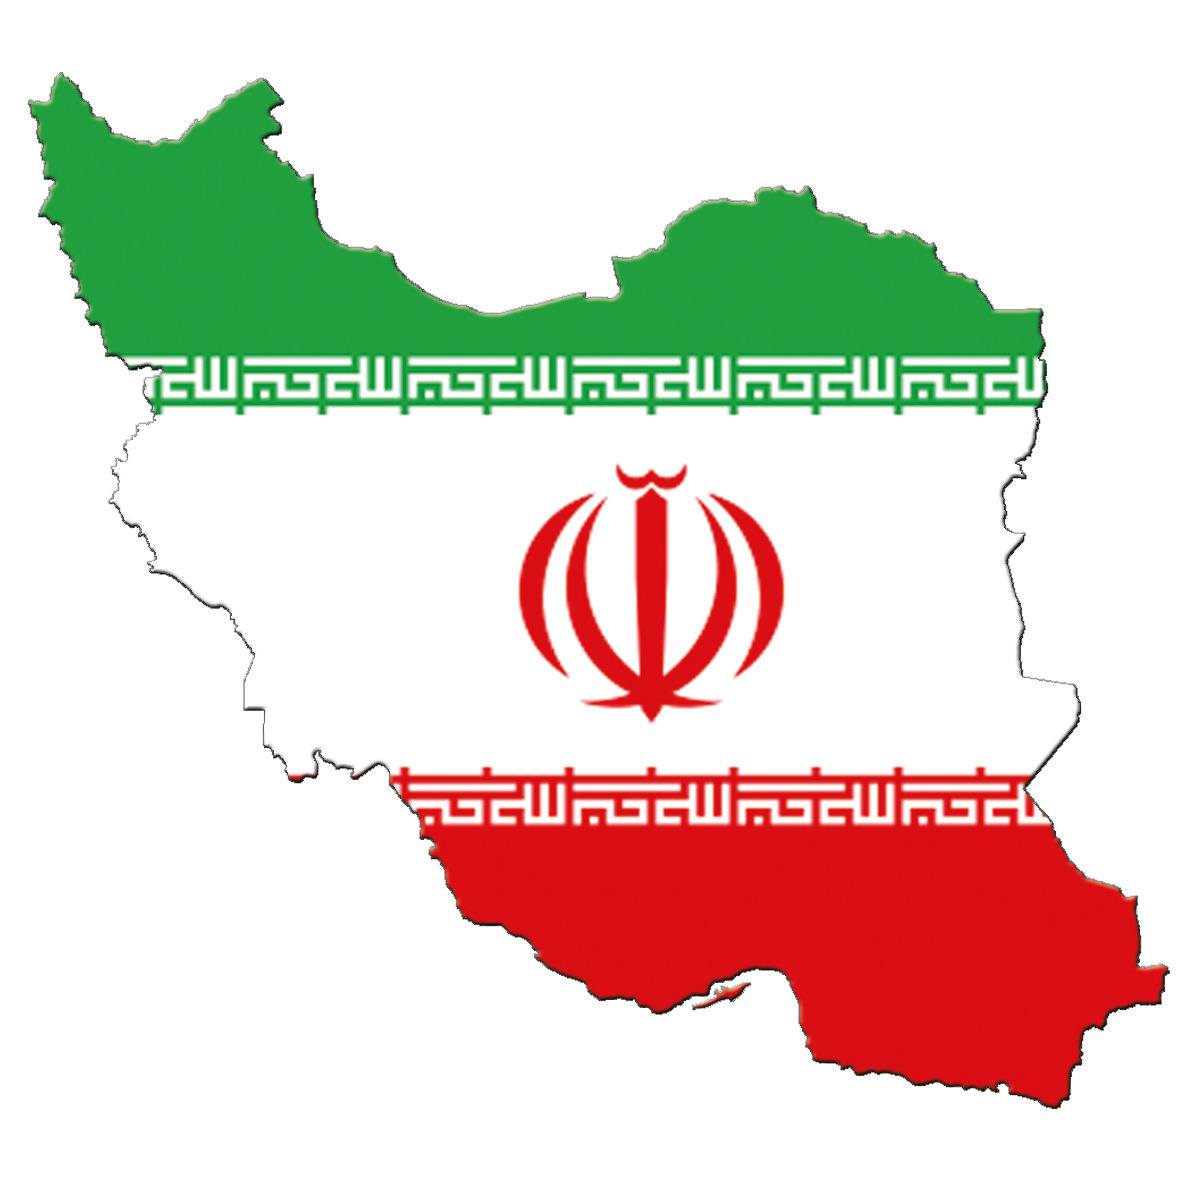 خوشگل ترین PNG نقشه ایران به رنگ پرچم برای پروفایل